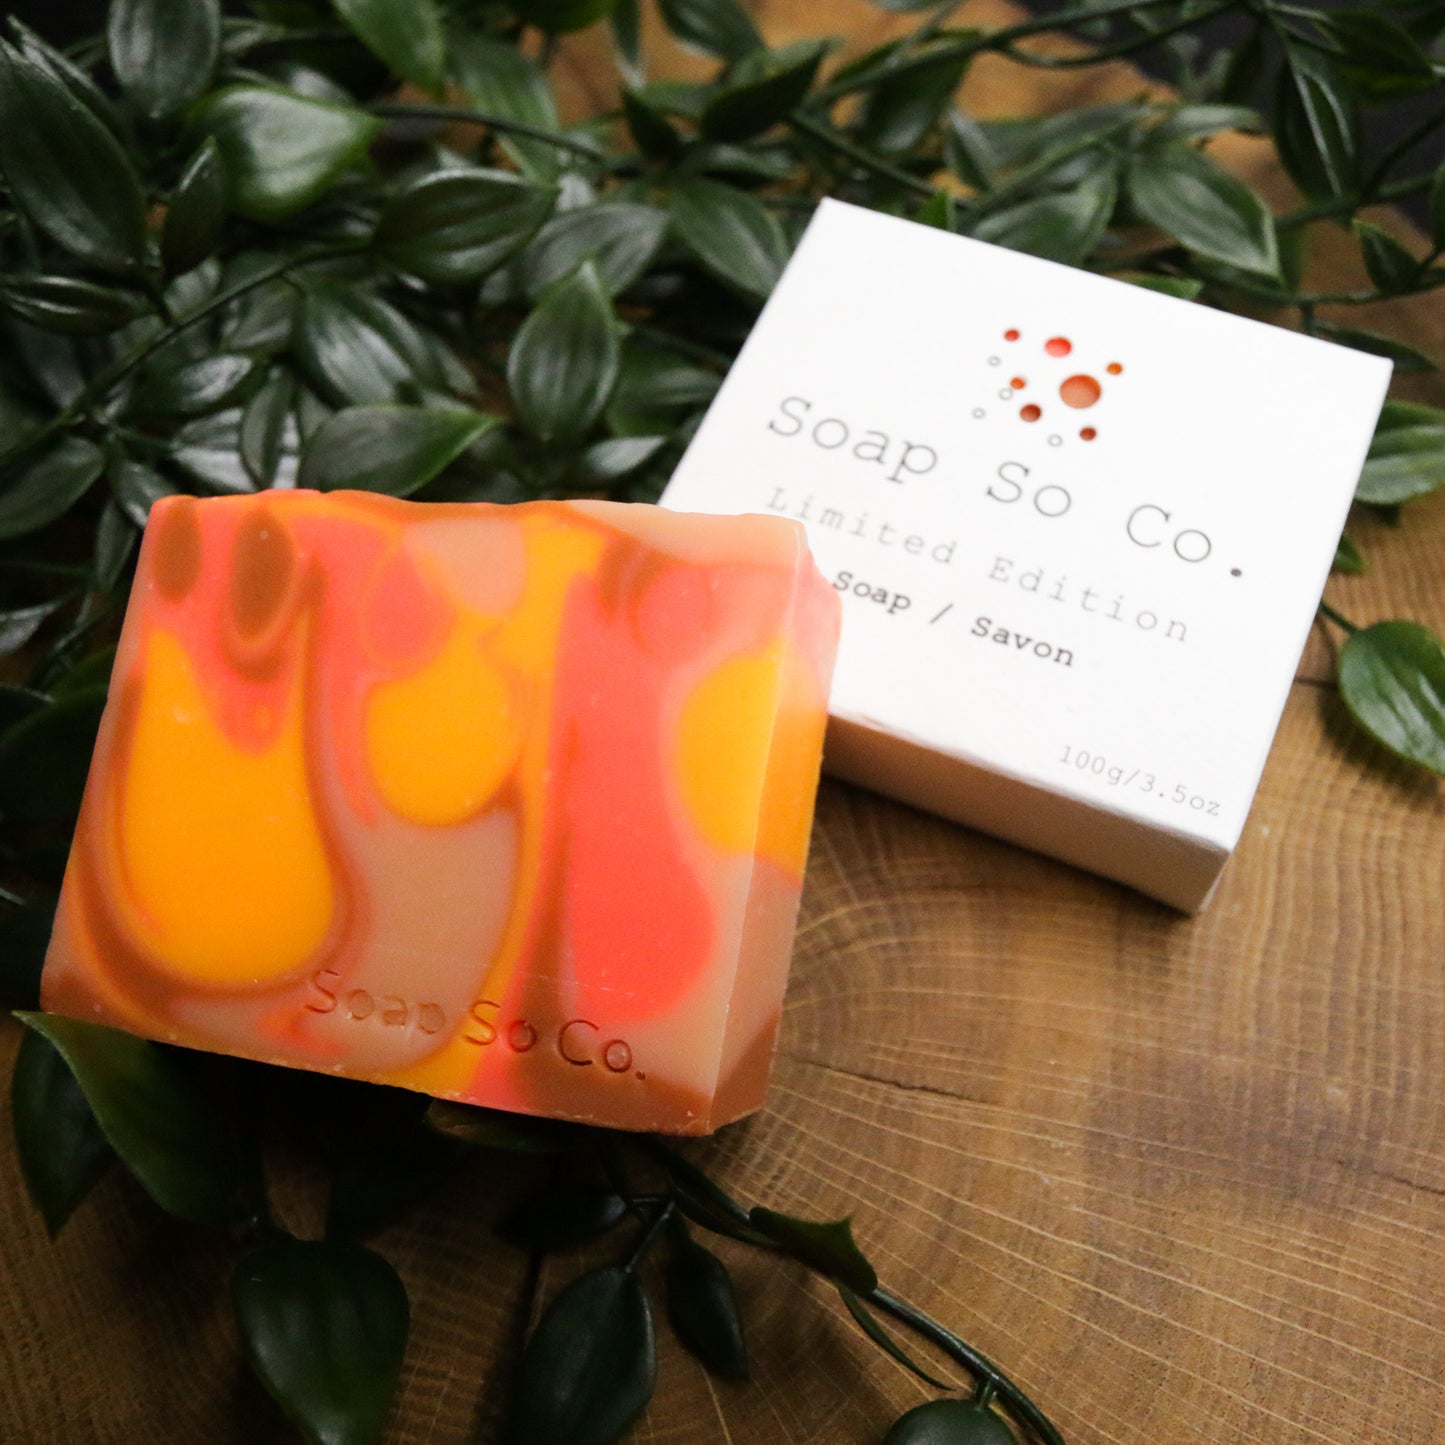 Soap So Co. Bar Soap - Cheeky Peach